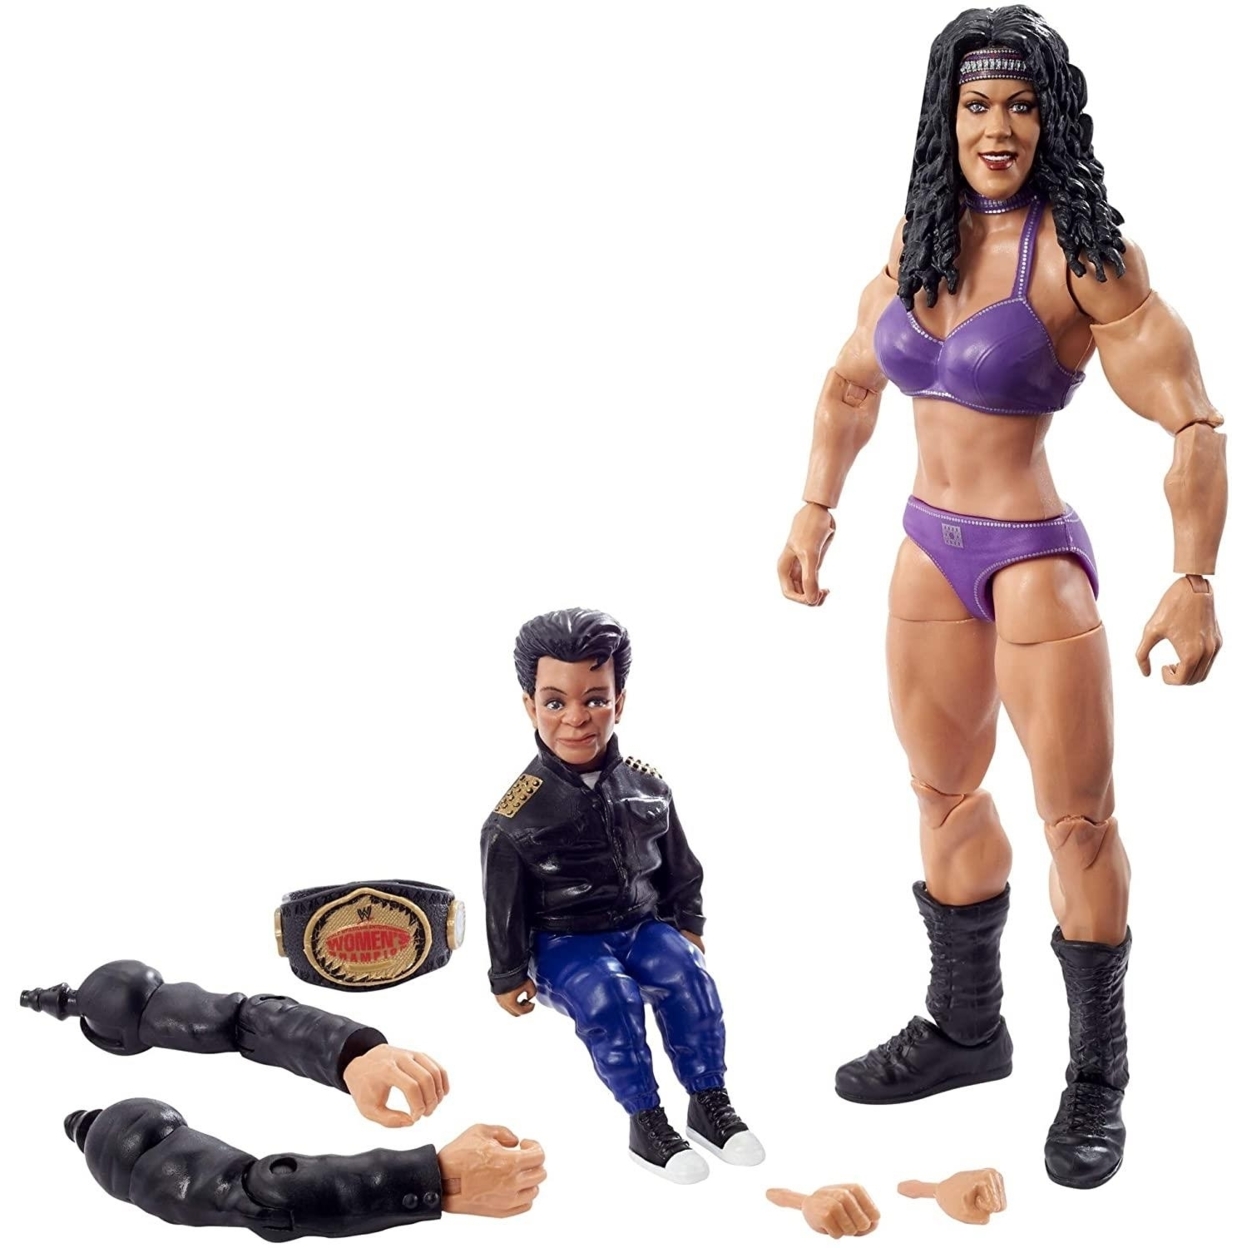 WWE Wrestlemania Elite Collection Chyna Wrestling Superstar 9th Wonder Mattel